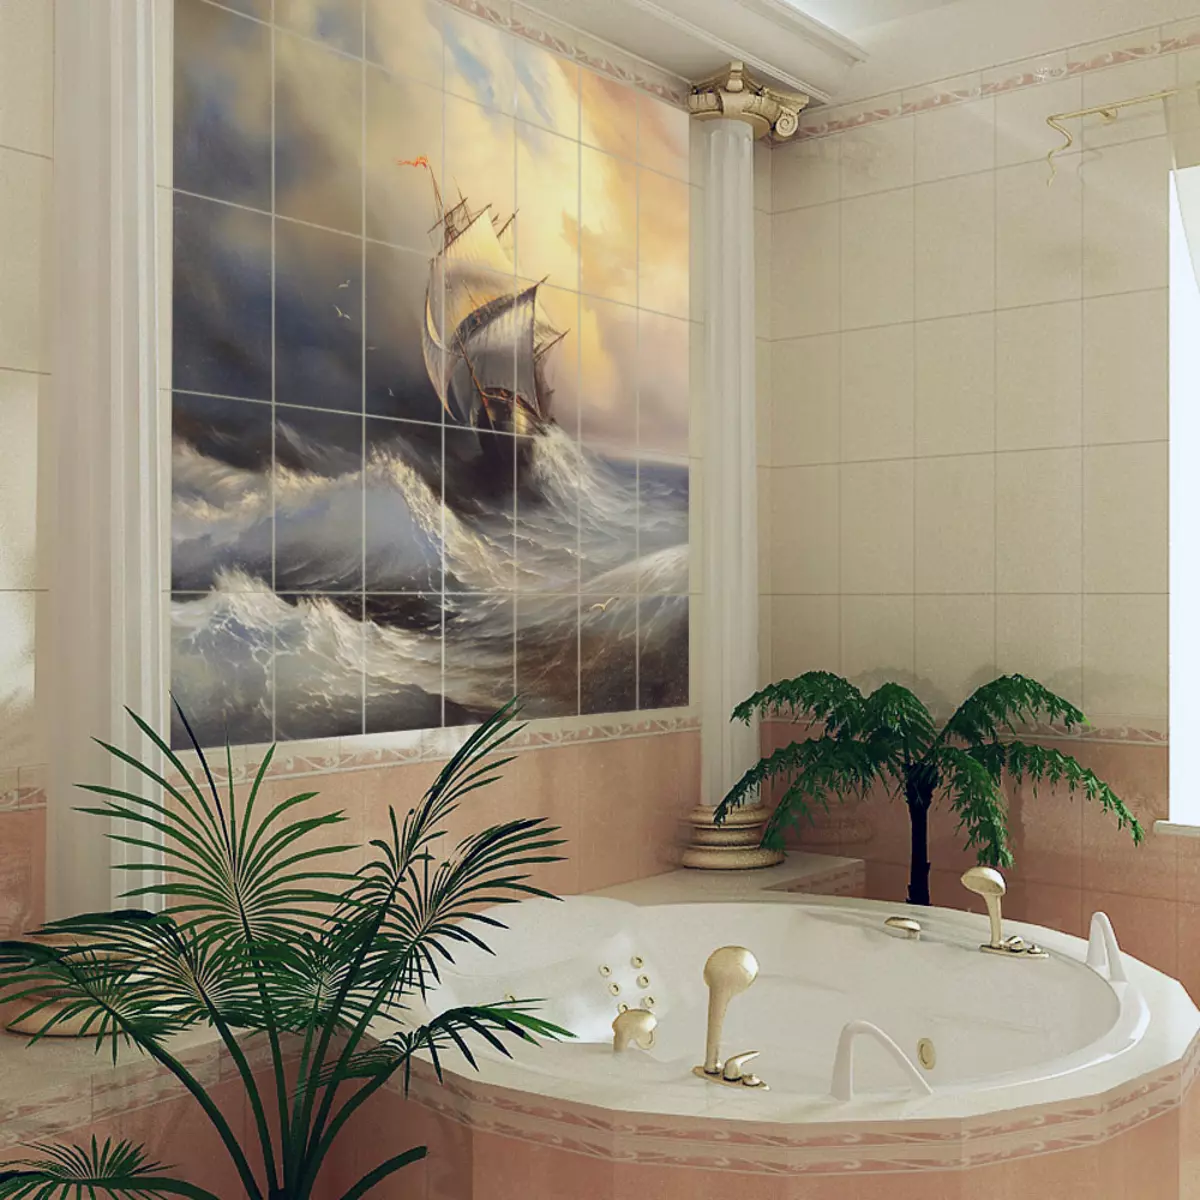 Πίνακας από κεραμίδι στο μπάνιο (79 φωτογραφίες): Επισκόπηση του πίνακα για το μπάνιο από κεραμικά πλακίδια και μωσαϊκά, πλακάκια και μωσαϊκά πάνελ με θαλάσσια θέματα και άλλα 21368_14